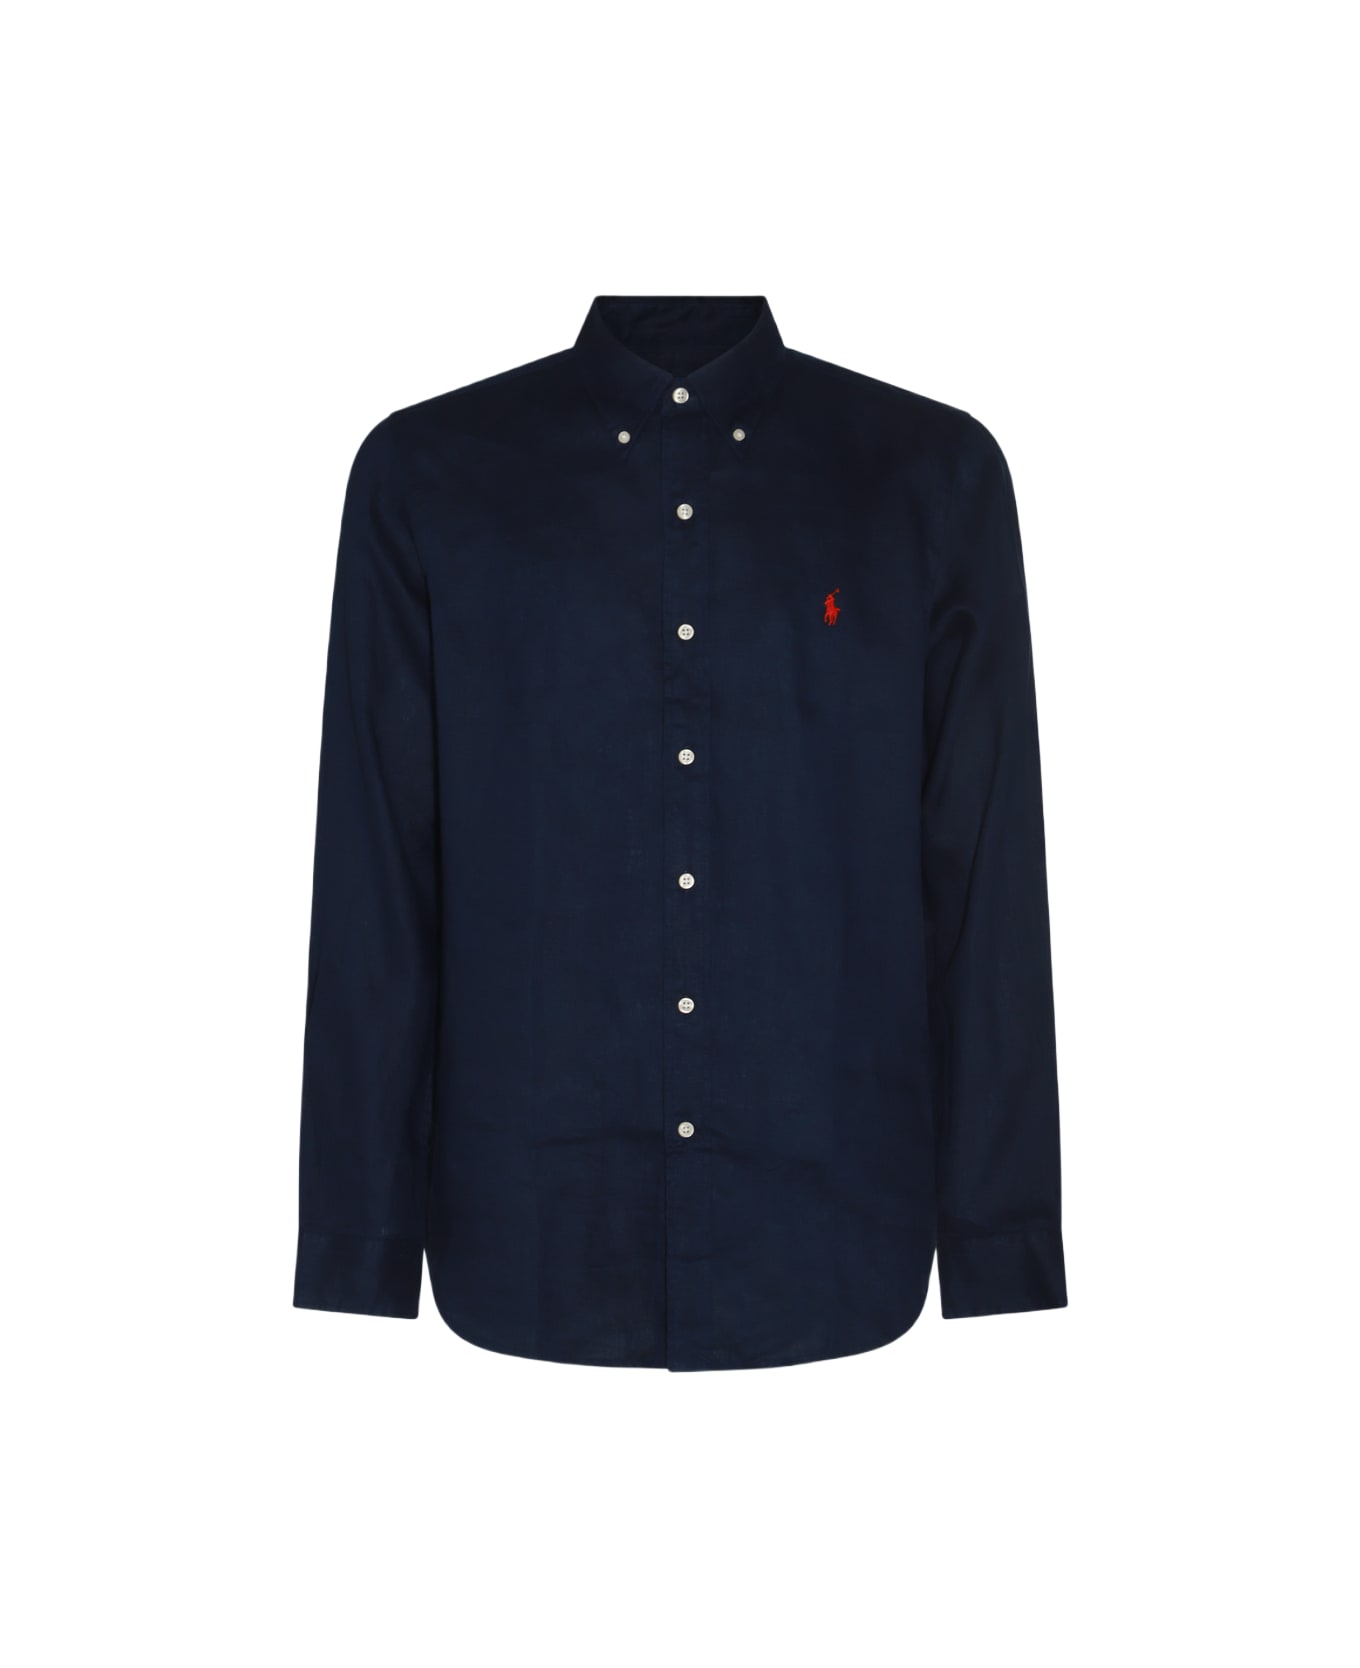 Polo Ralph Lauren Navy Blue Linen Shirt - NEWPORT NAVY